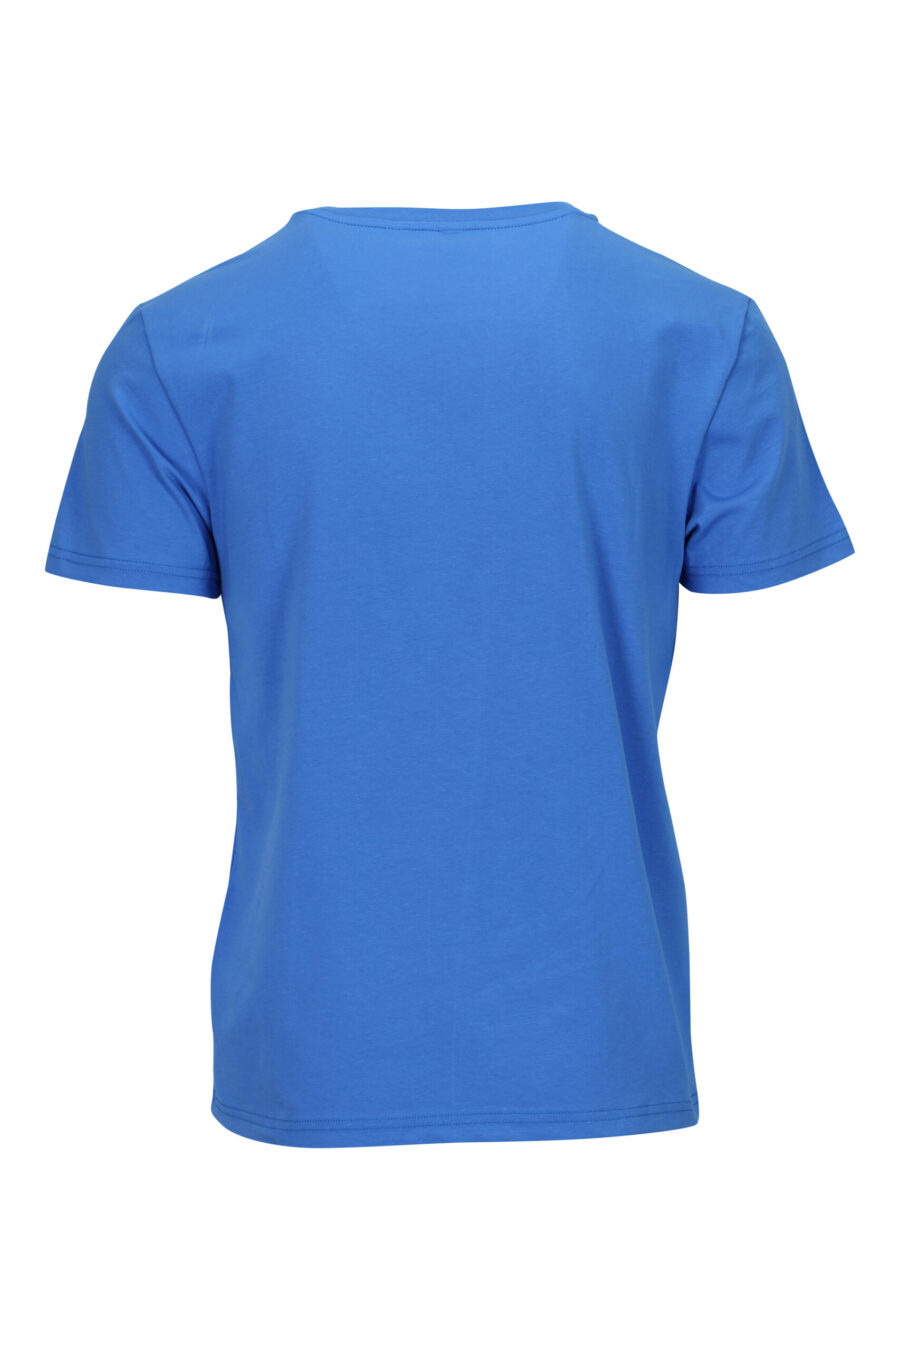 T-shirt bleu avec minilogue "swim" - 667113673417 1 à l'échelle